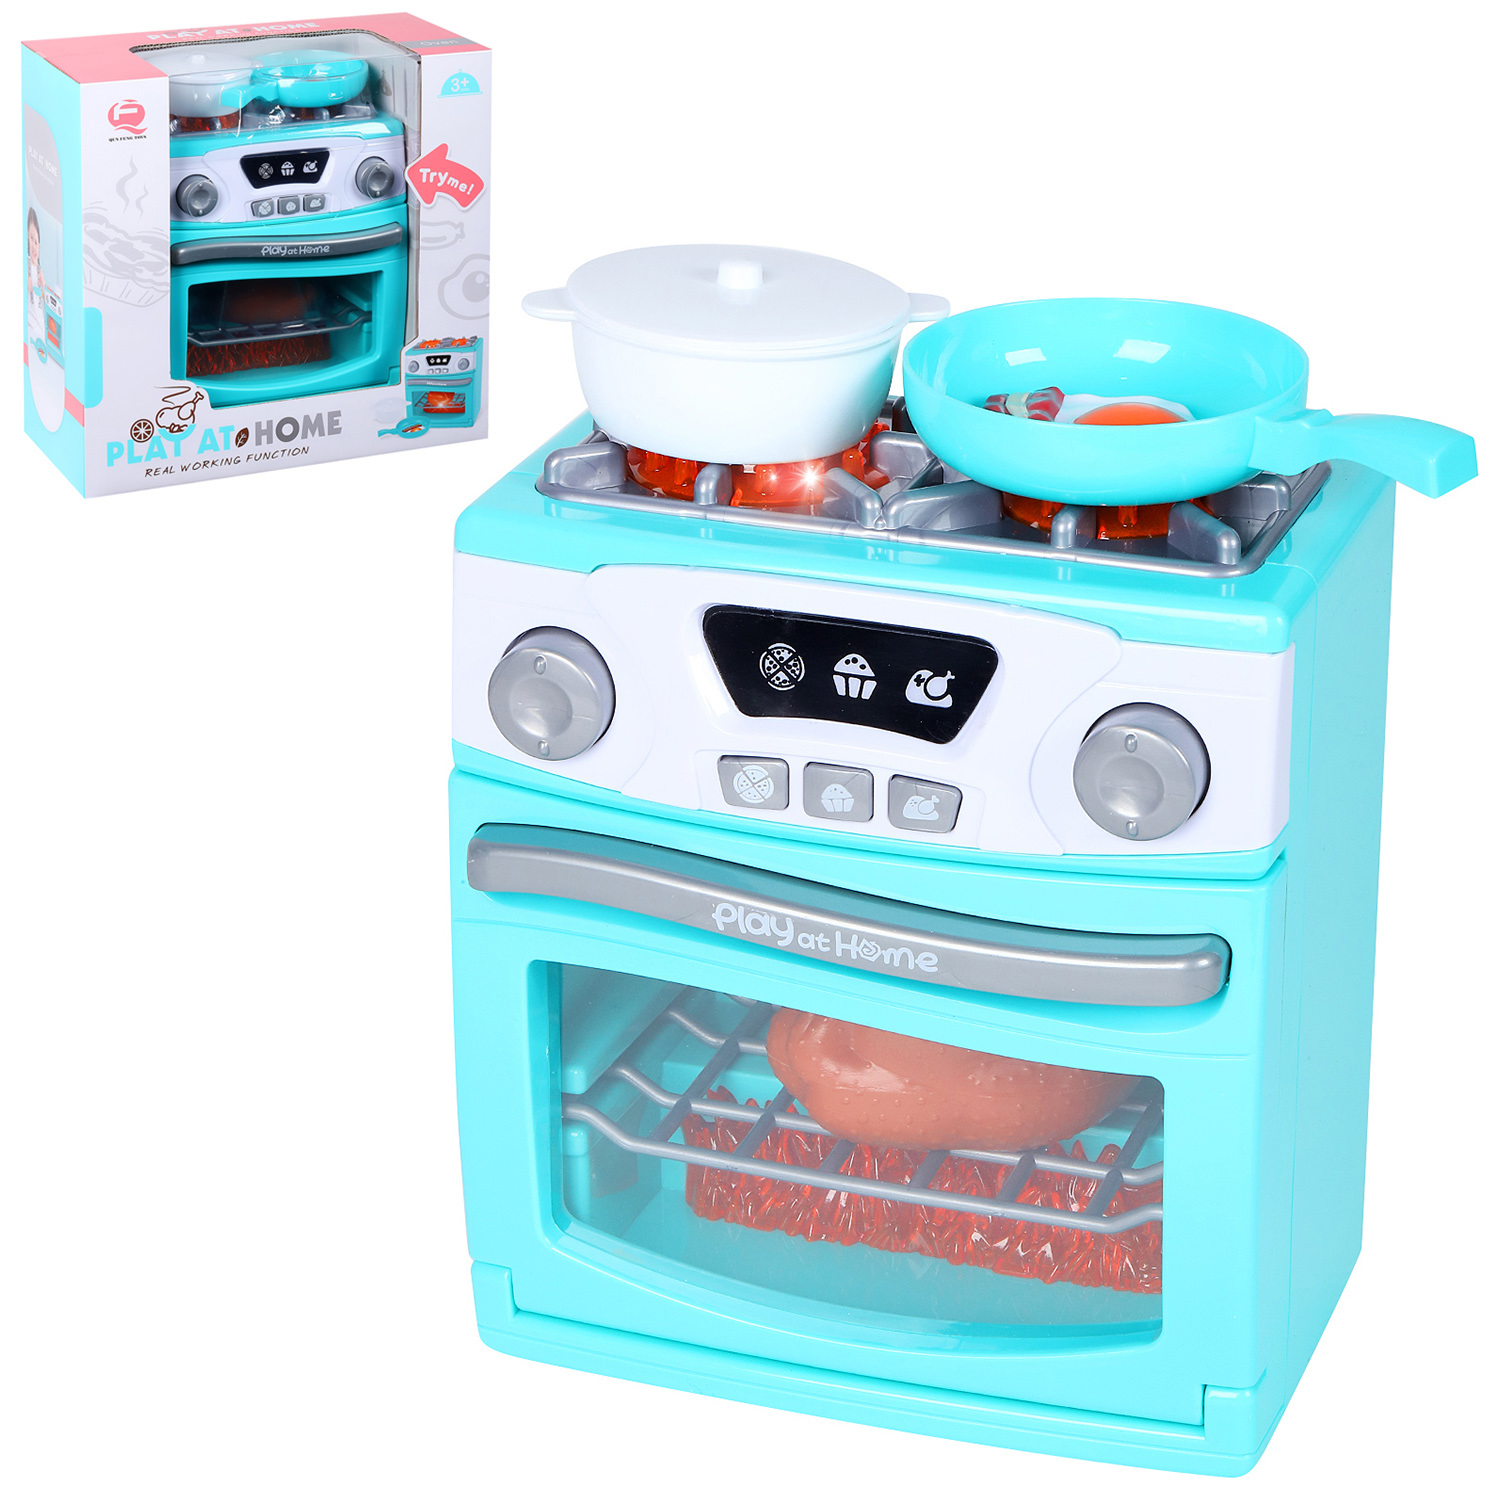 фото Игровой набор qun feng toys плита с продуктами и аксессуарами голубой jb0209347.